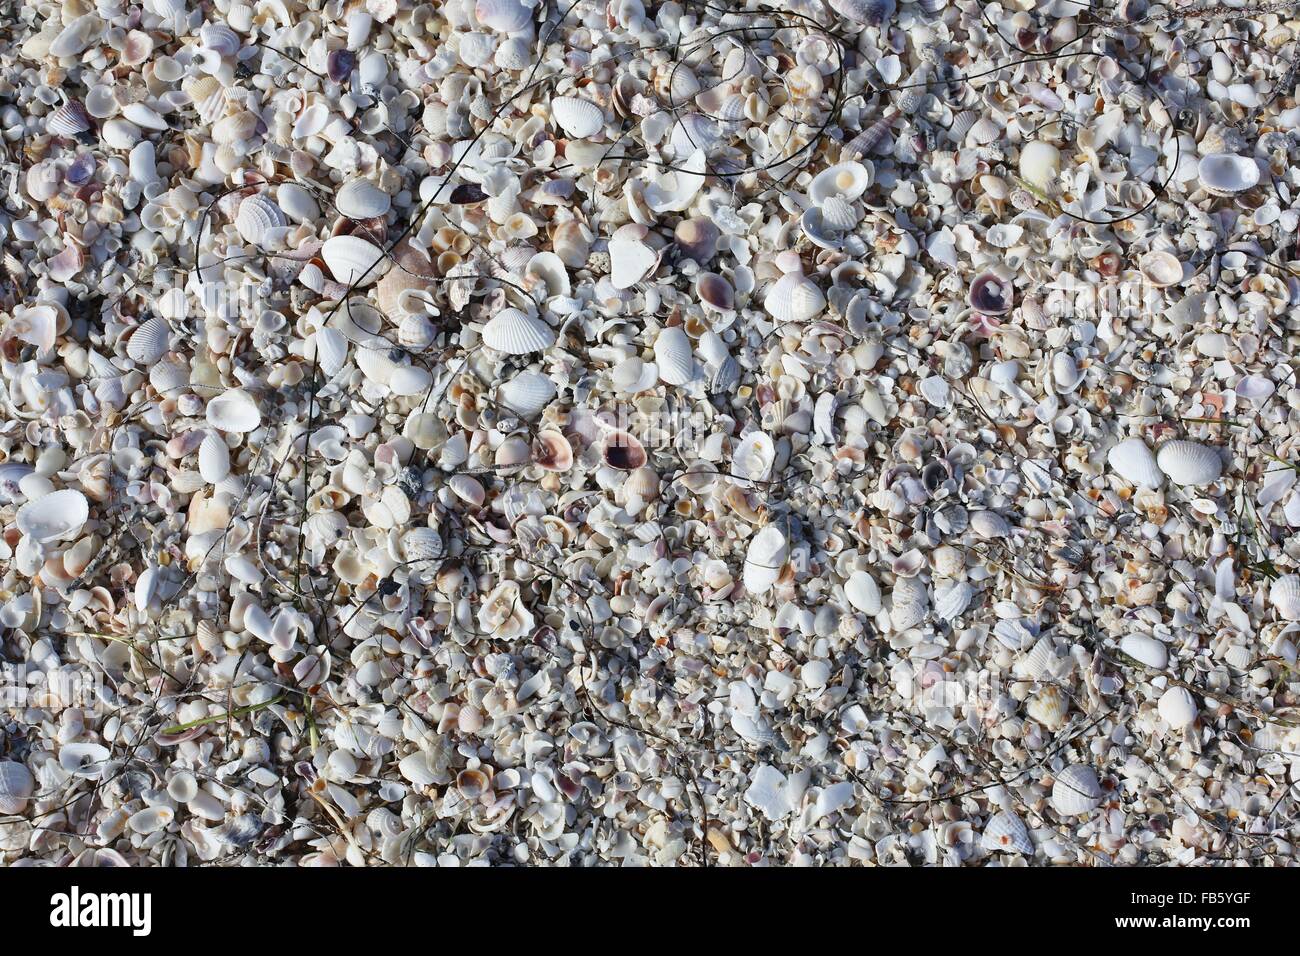 Un tas de coquilles de mer sur une plage. Banque D'Images